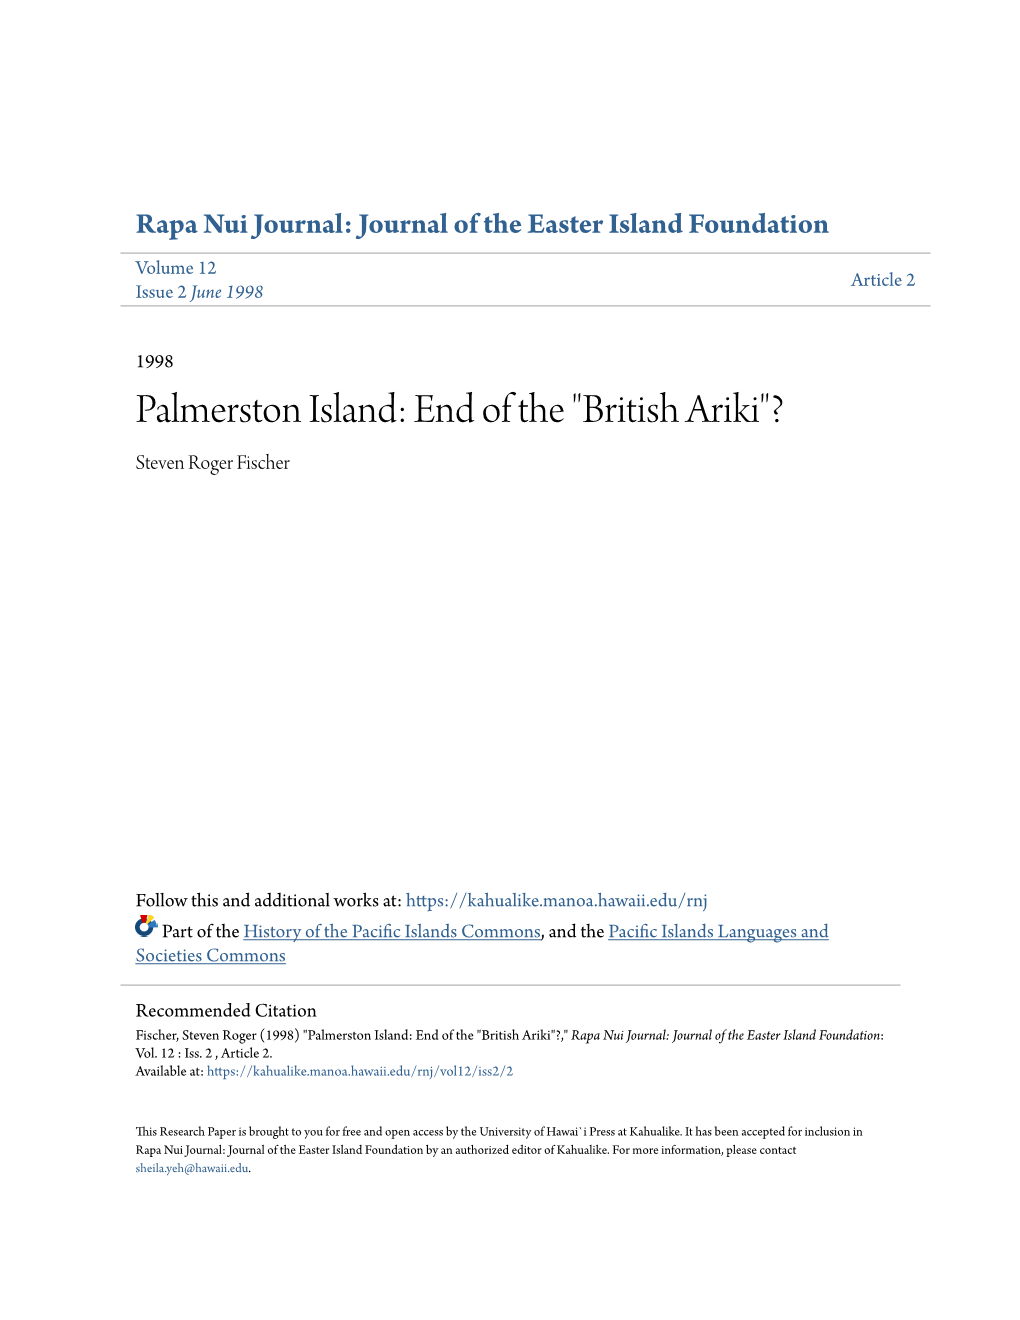 Palmerston Island: End of the "British Ariki"? Steven Roger Fischer